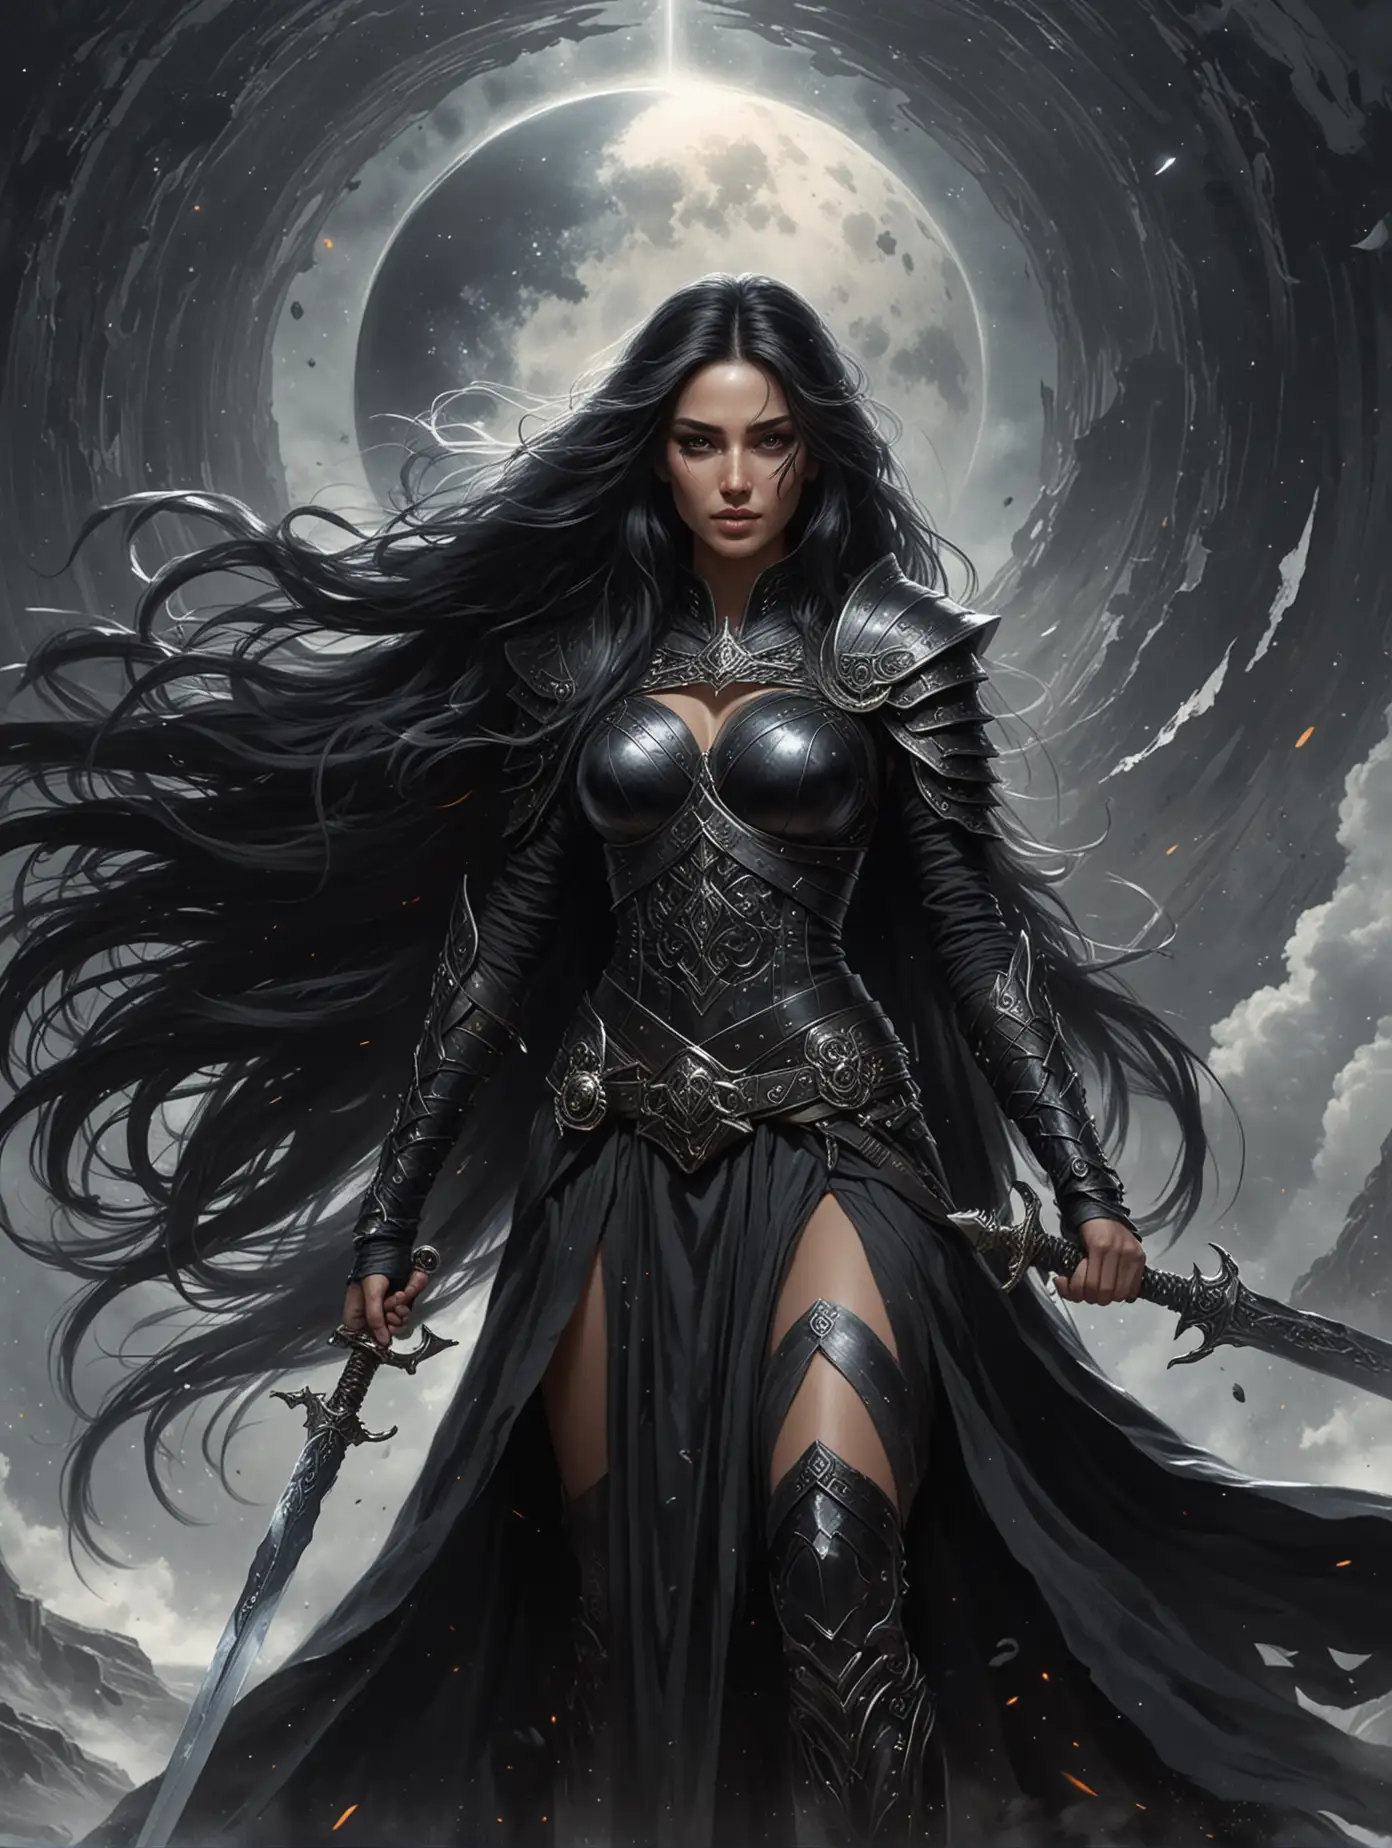 на фоне черной дыры стоит красивая женщина воин, она жрица, в руке у нее большой меч.  У женщины длинные черные волосы. На глазах черная маска как украшение. На женщине одежда с доспехами черного цвета, которая развивается на ветру.